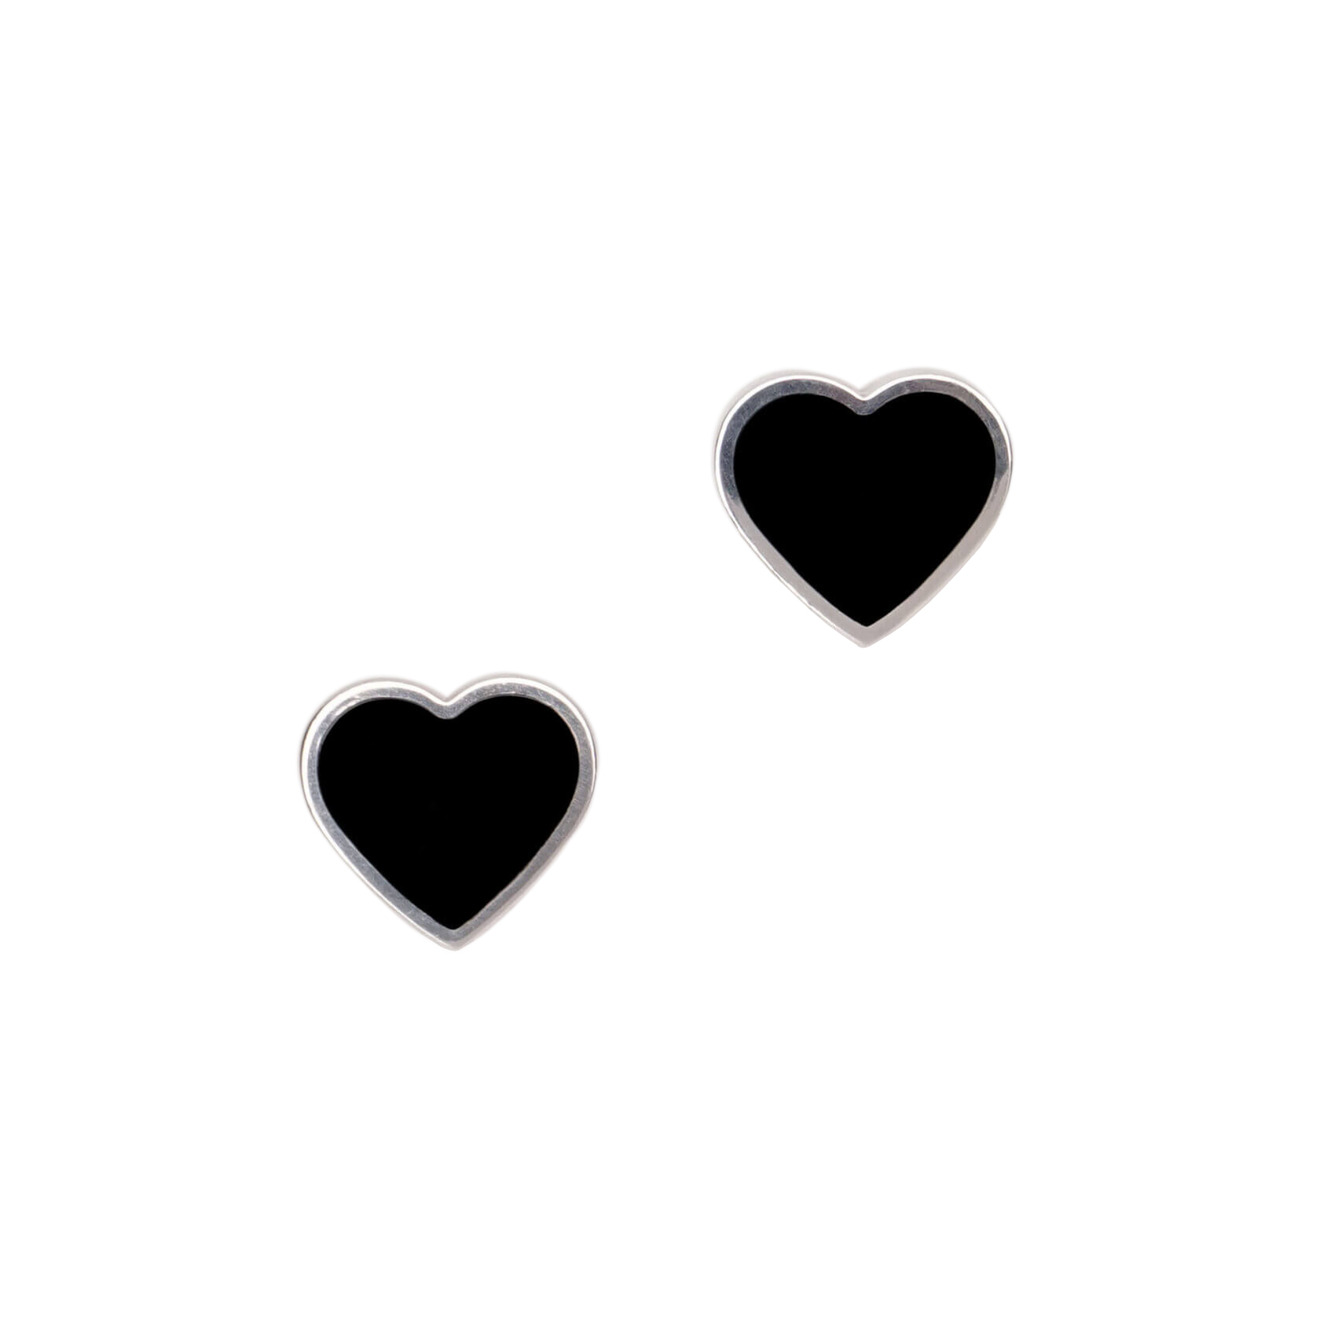 aqua серебристые серьги с черными эмалированными сердцами Moonswoon Серьги-пусеты мз серебра с черными сердцами